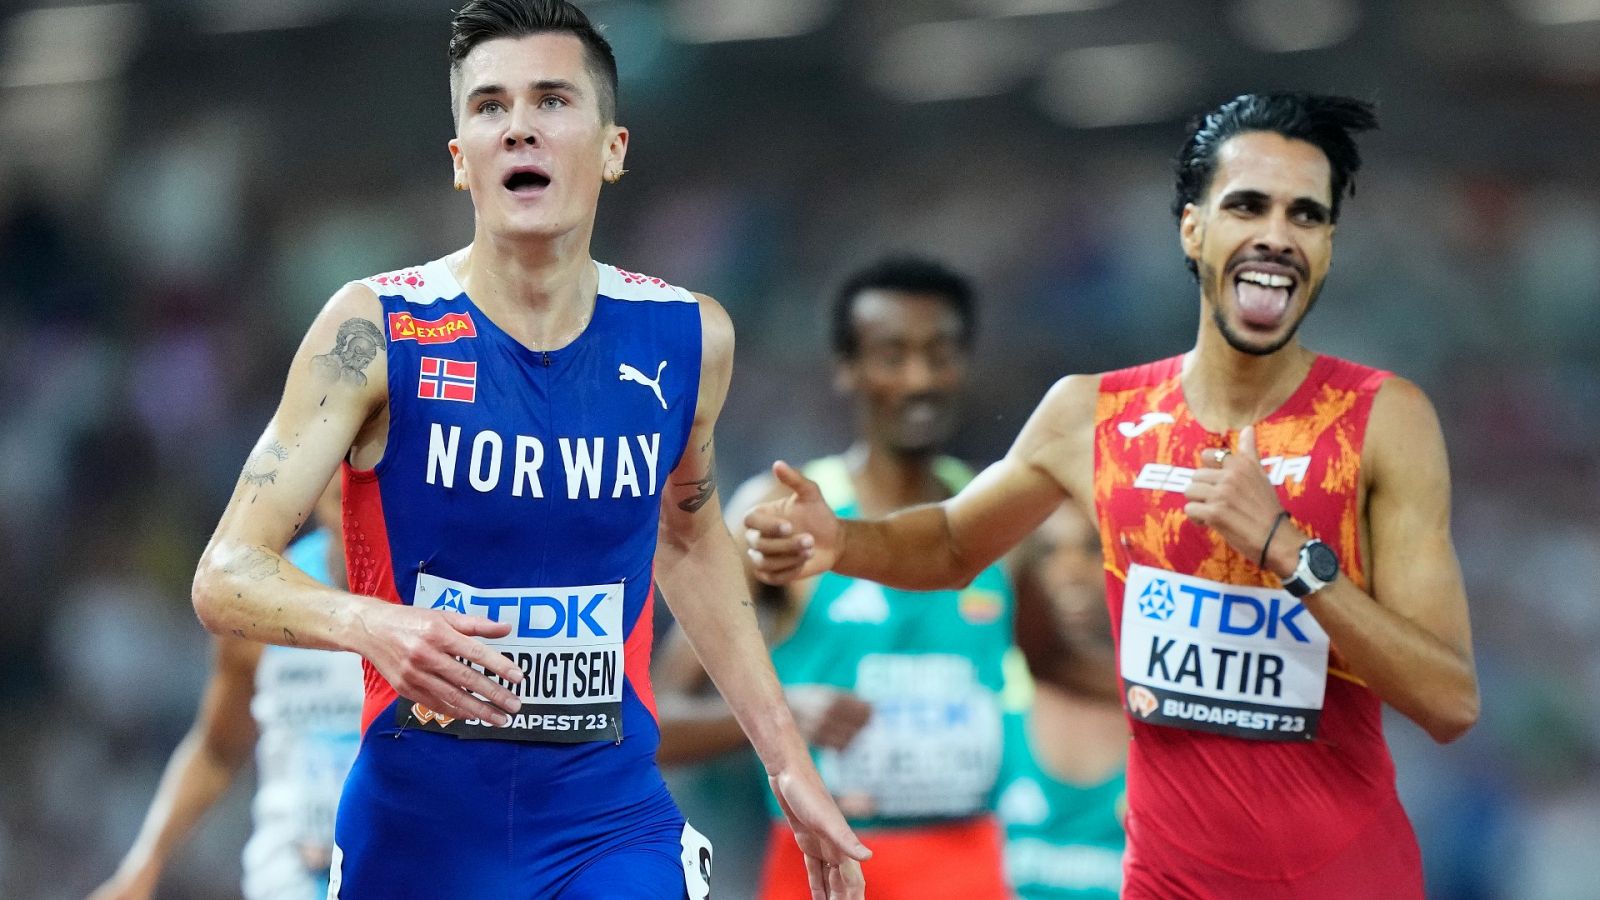 Atletismo | Katir logra una asombrosa plata en un cara a cara contra Ingebrigtsen